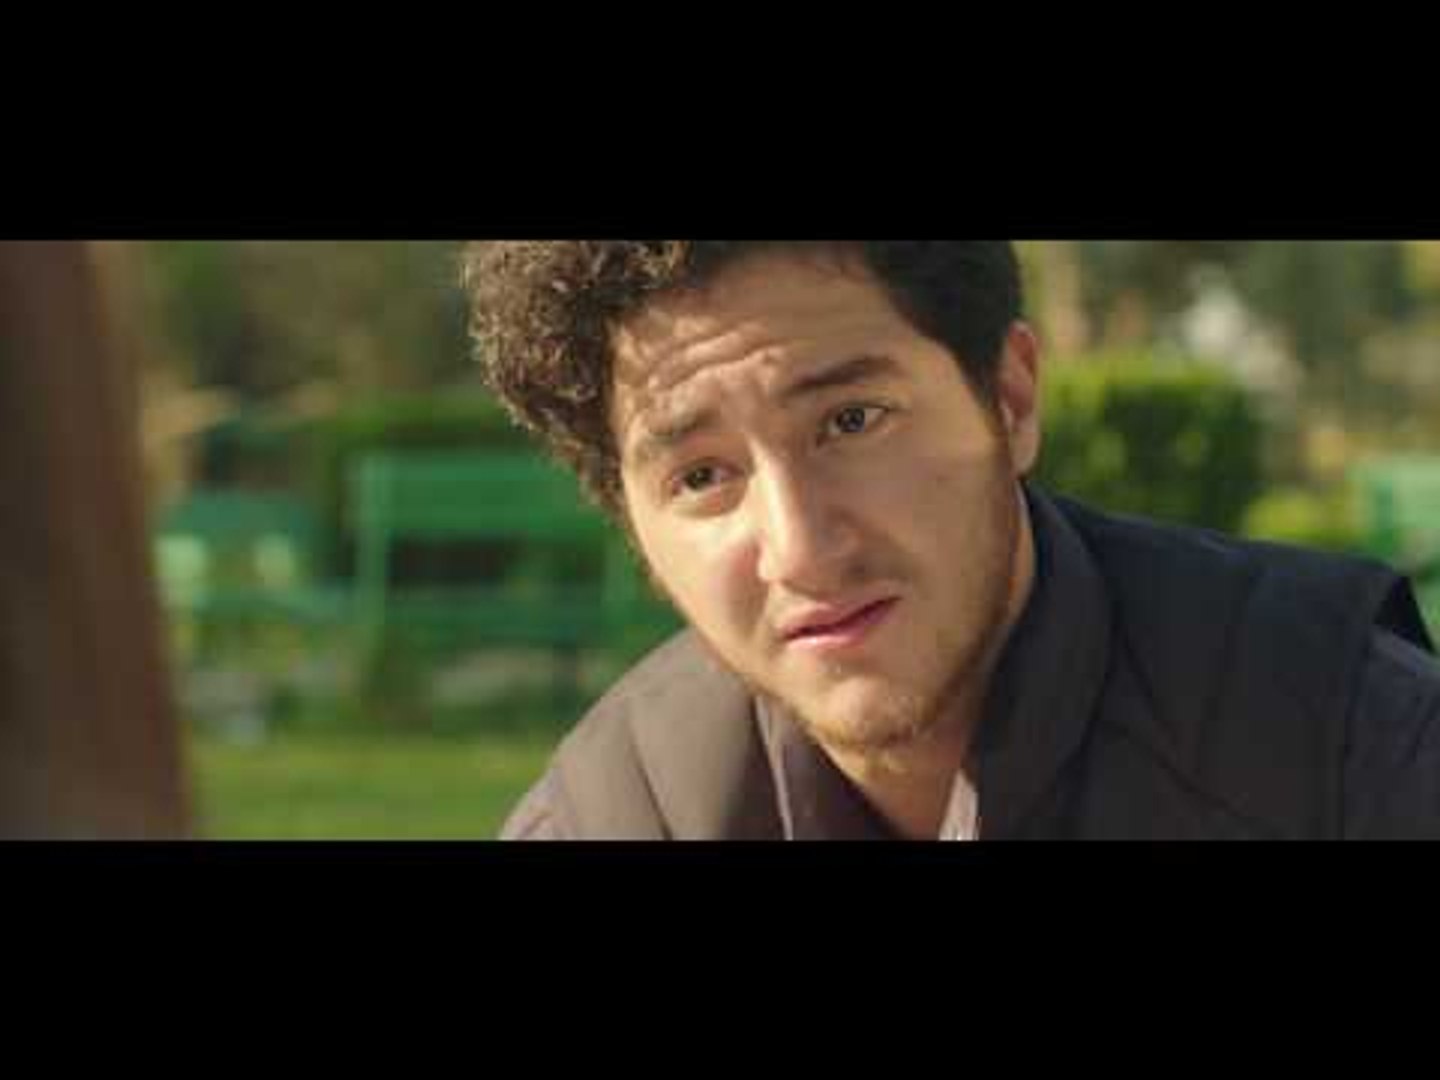 مسلسل لا تطفئ الشمس - الحلقة السادسة | La totfe' Al chams - Eps 6 - فيديو  Dailymotion